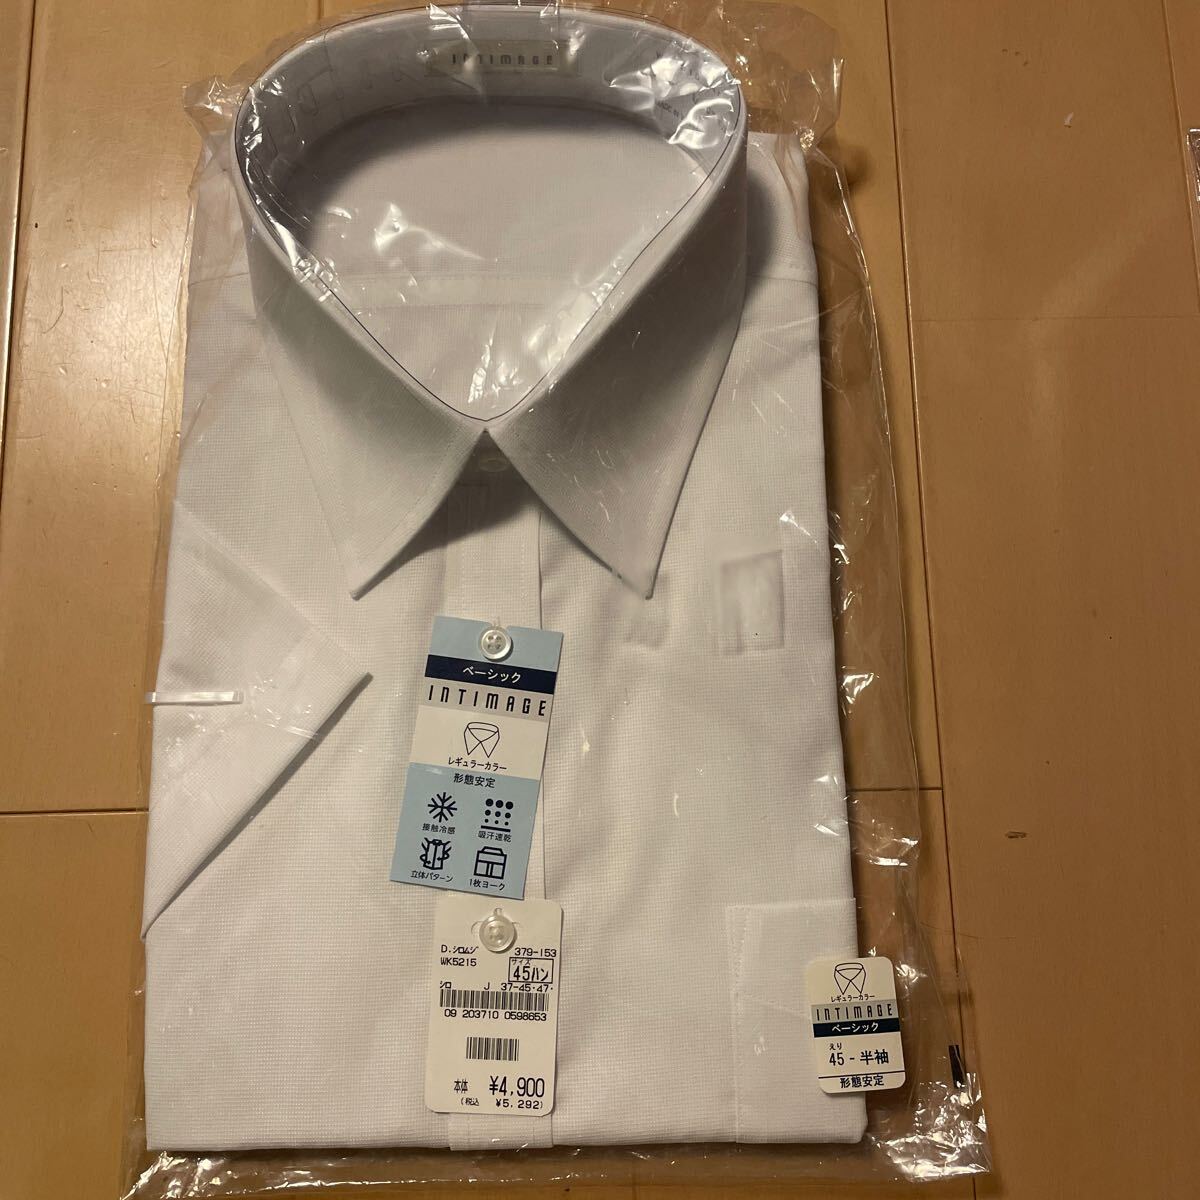  бесплатная доставка новый товар INTIMAGE короткий рукав рубашка 45 белый одноцветный сорочка форма устойчивость контакт охлаждающий . пот скорость . цельный образец 1 листов yoke включая доставку 